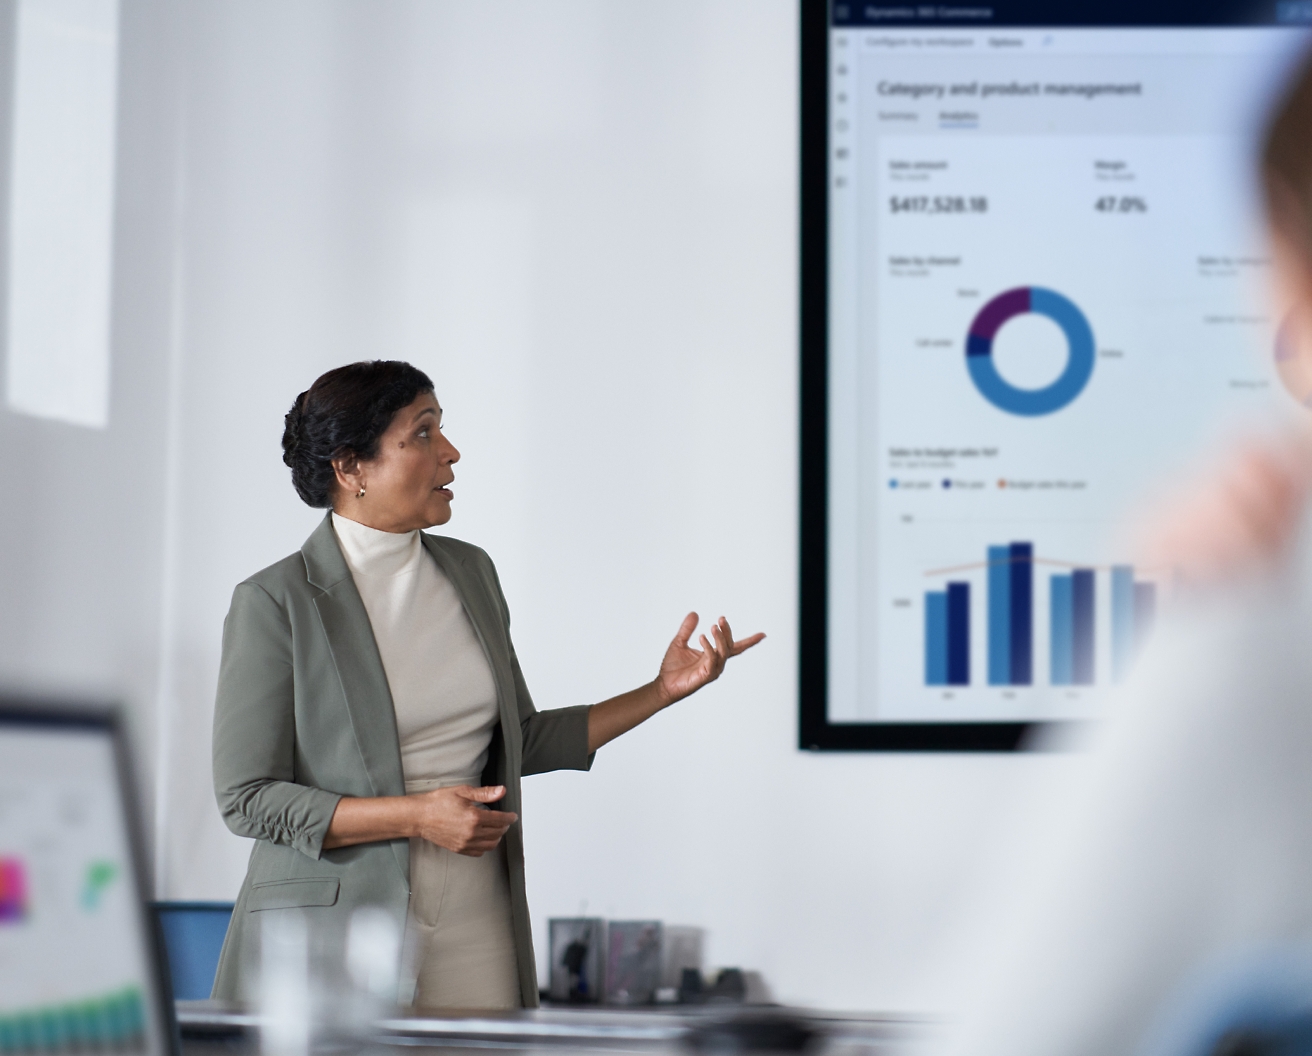 Une professionnelle présente des données financières sur un écran à son public dans un bureau moderne.